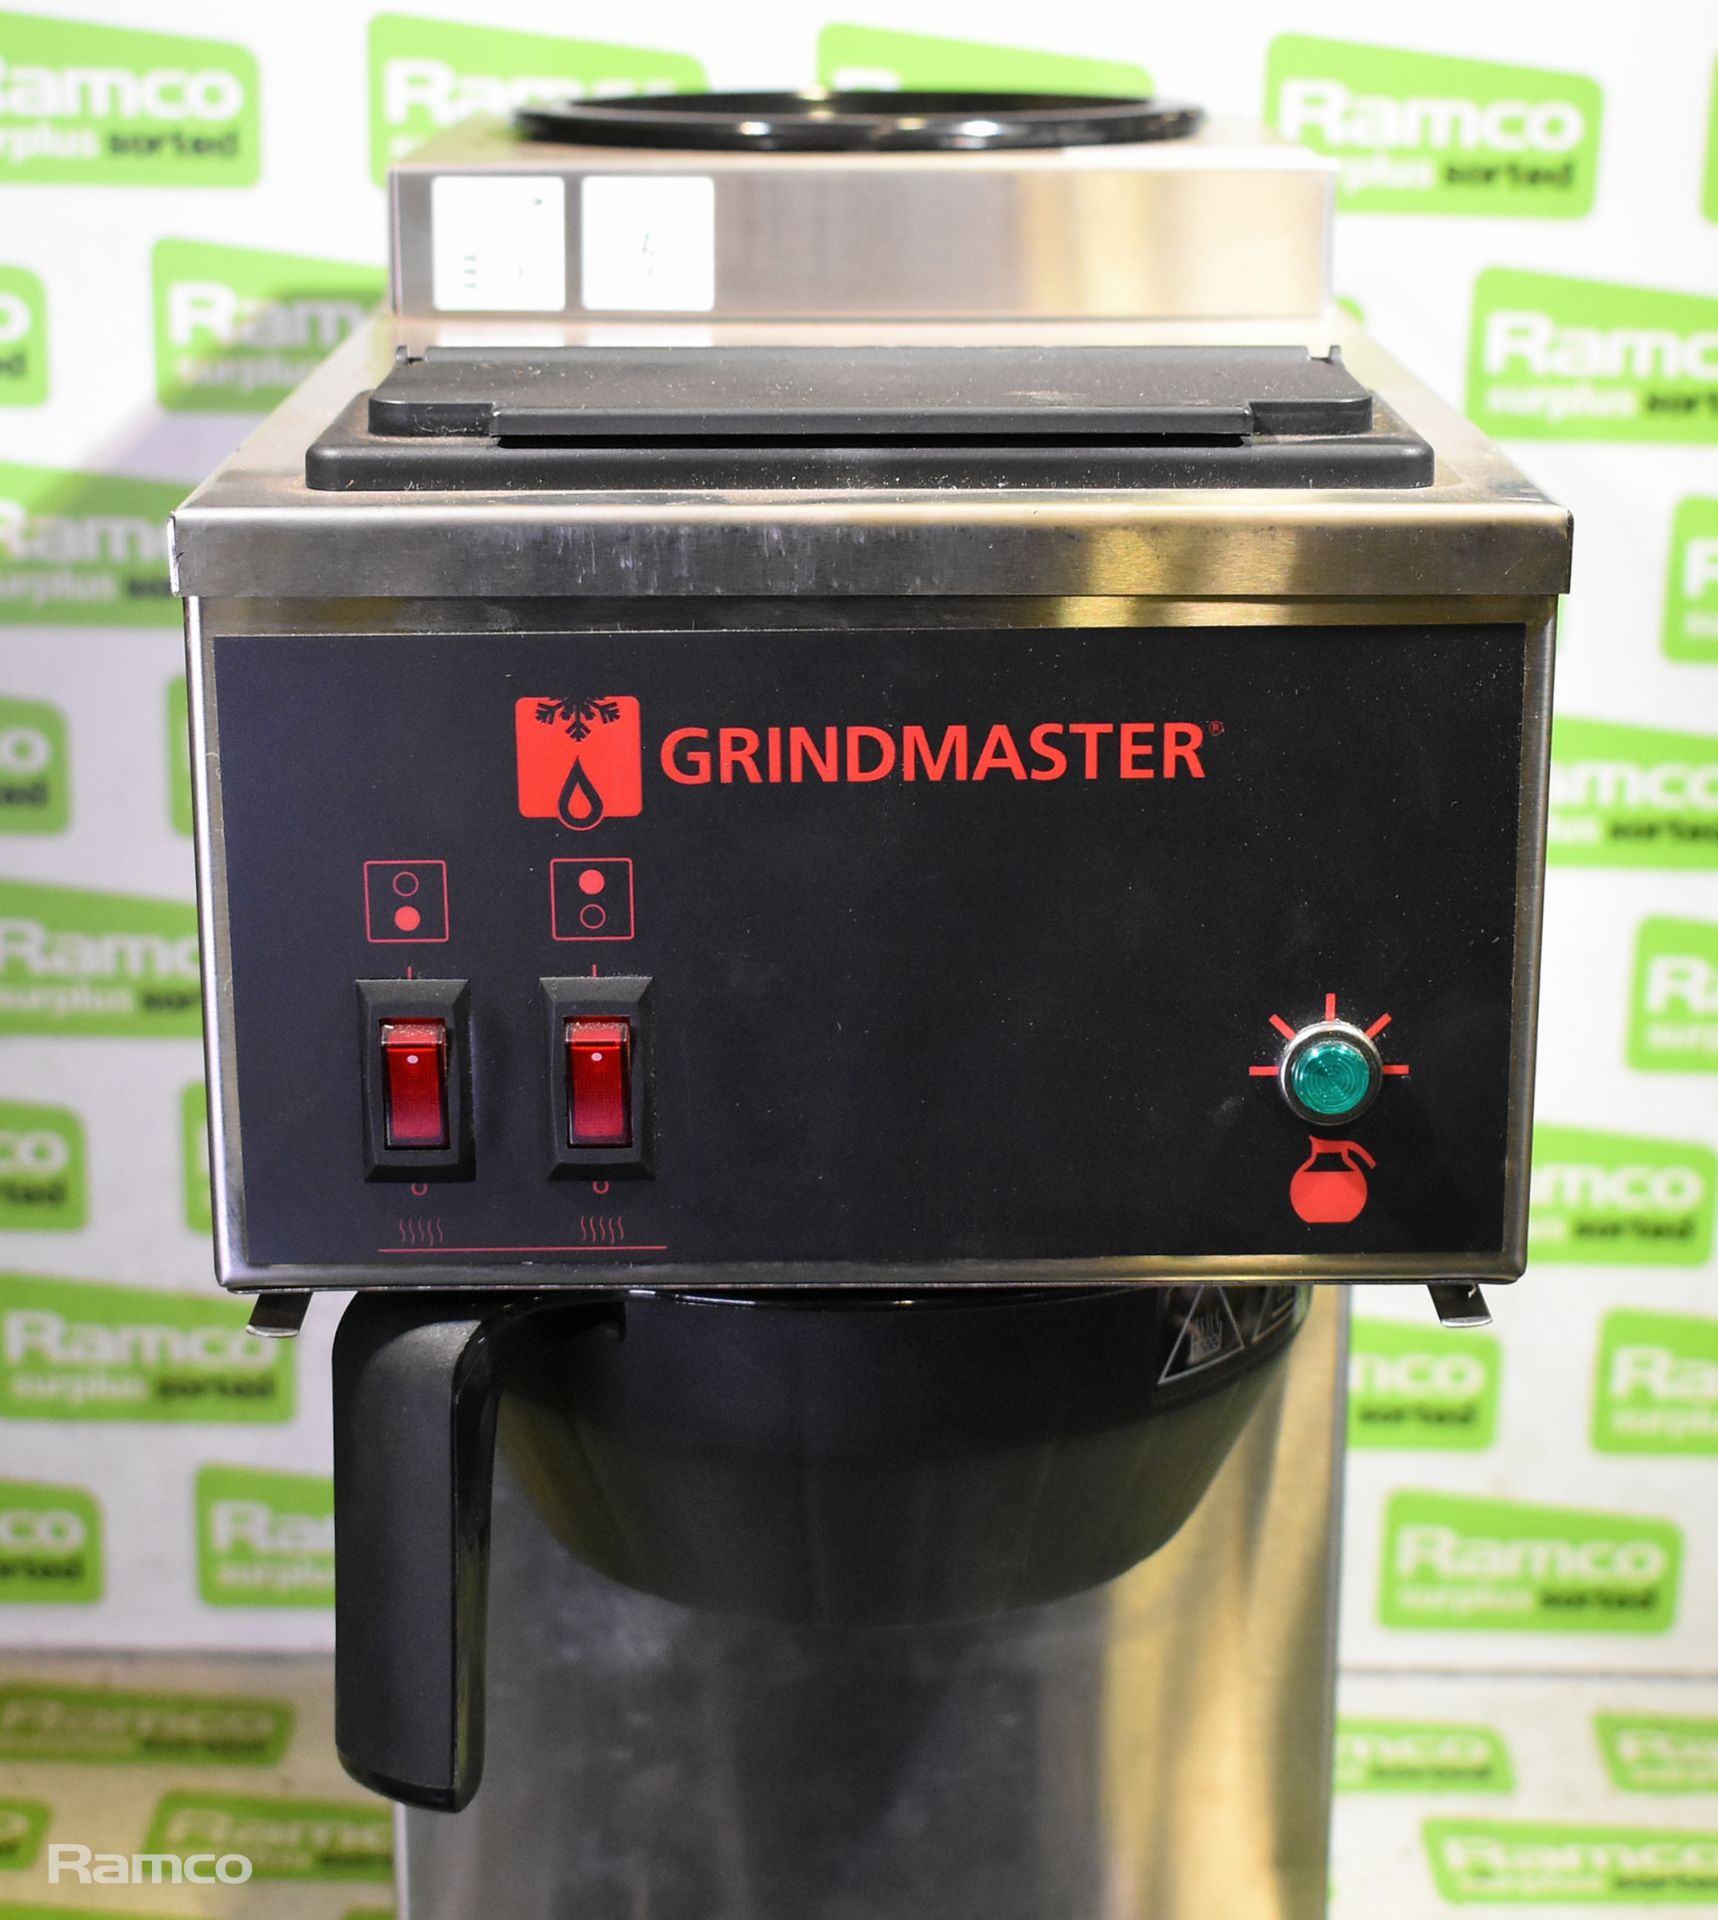 Grindmaster fresh coffee machine - Bild 2 aus 5